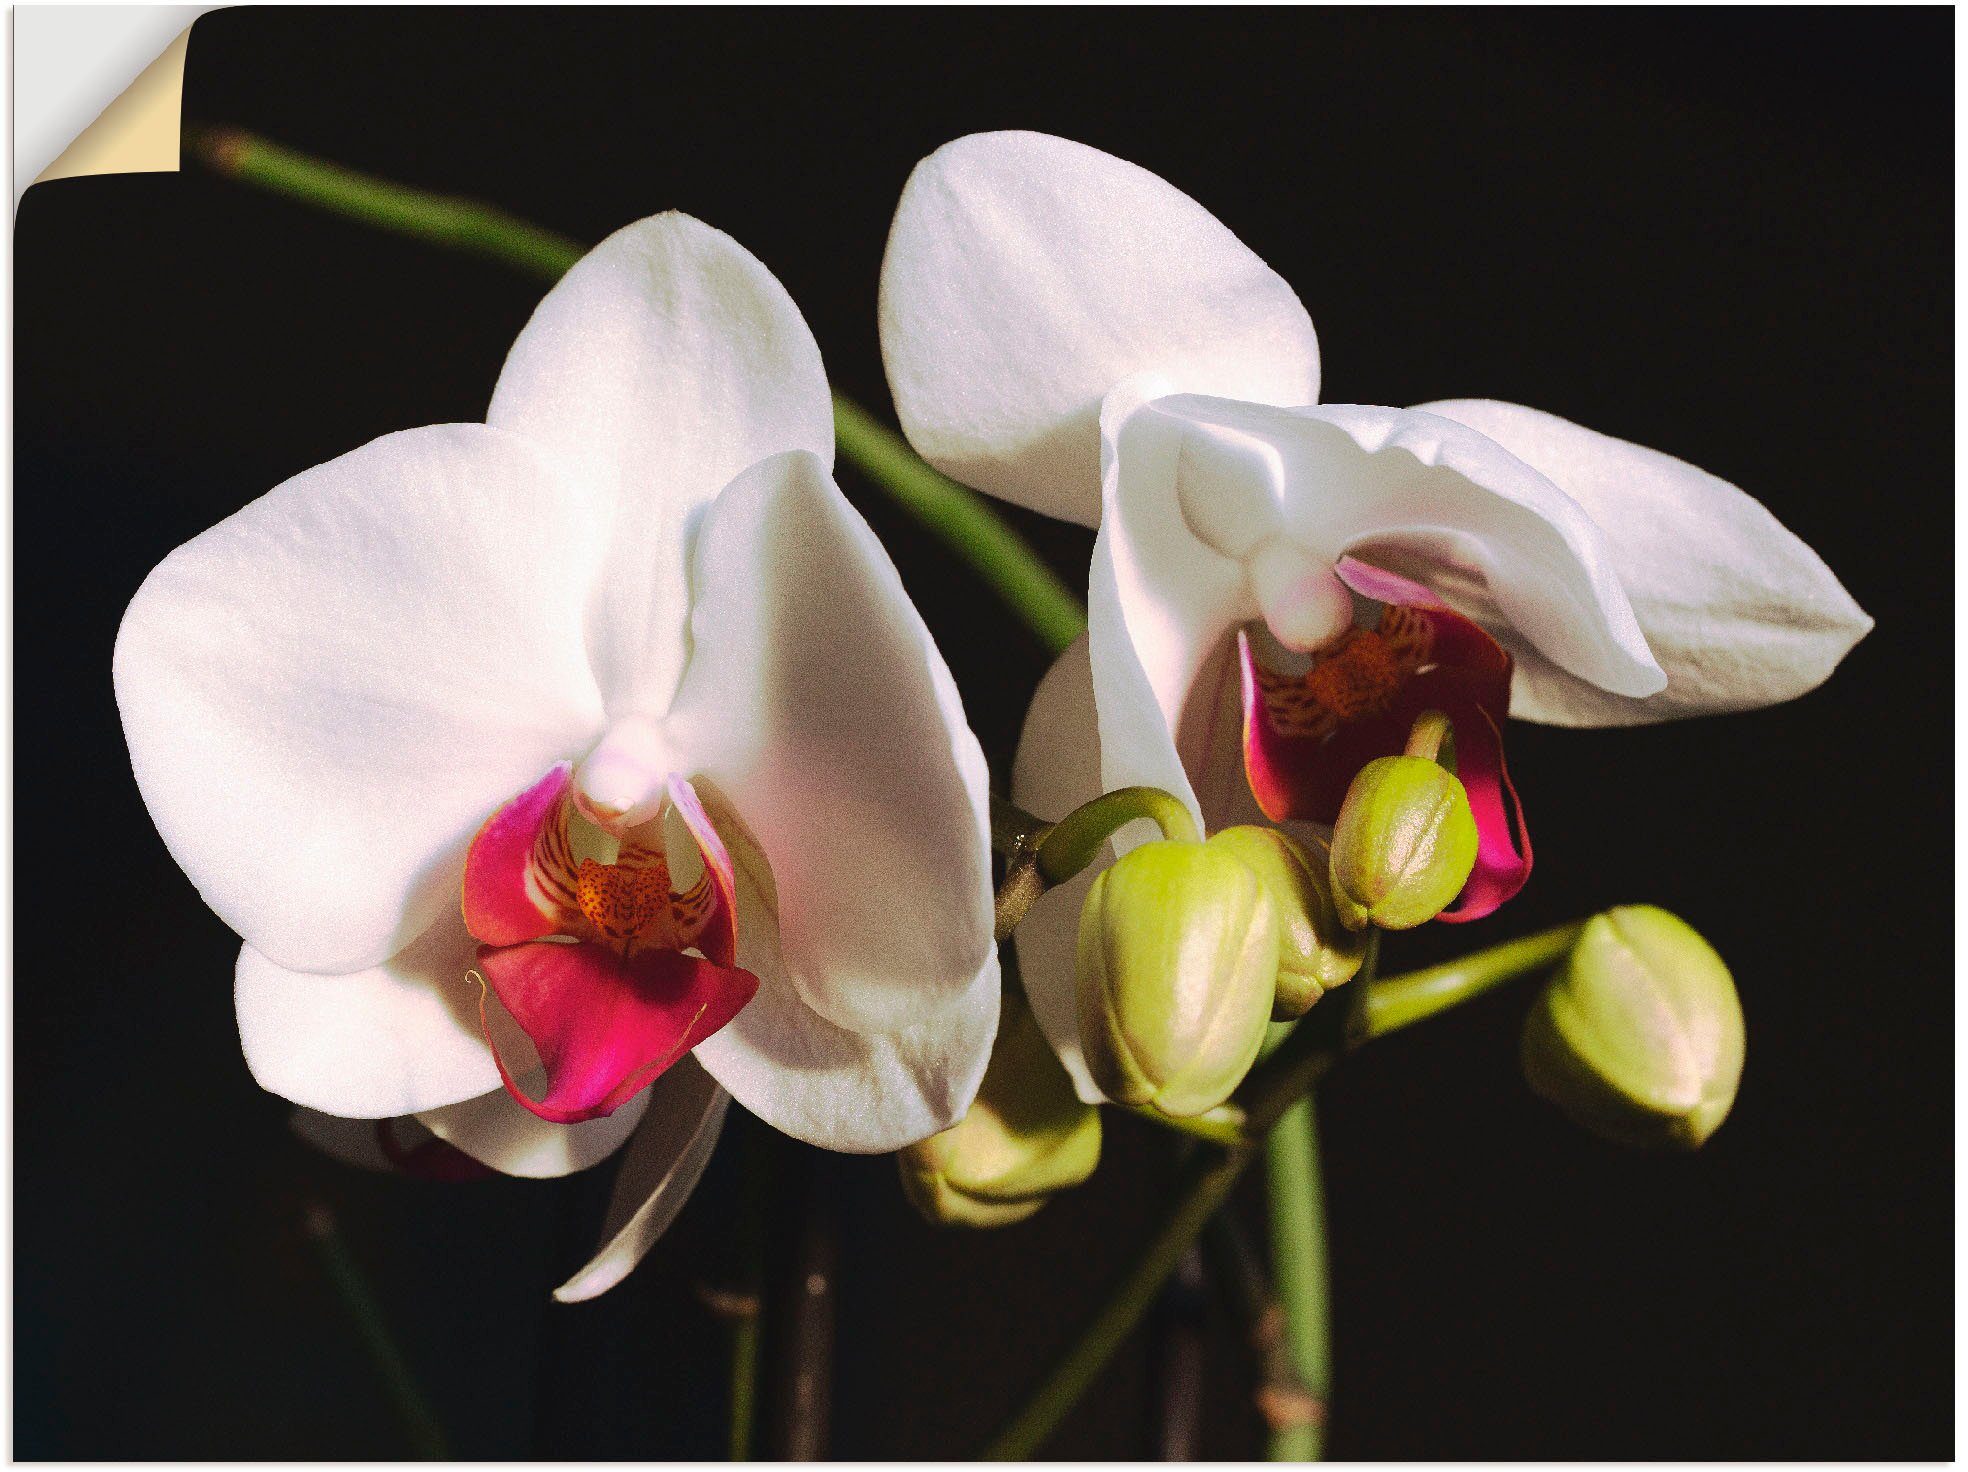 Artland Artprint Witte orchidee in vele afmetingen & productsoorten -artprint op linnen, poster, muursticker / wandfolie ook geschikt voor de badkamer (1 stuk)